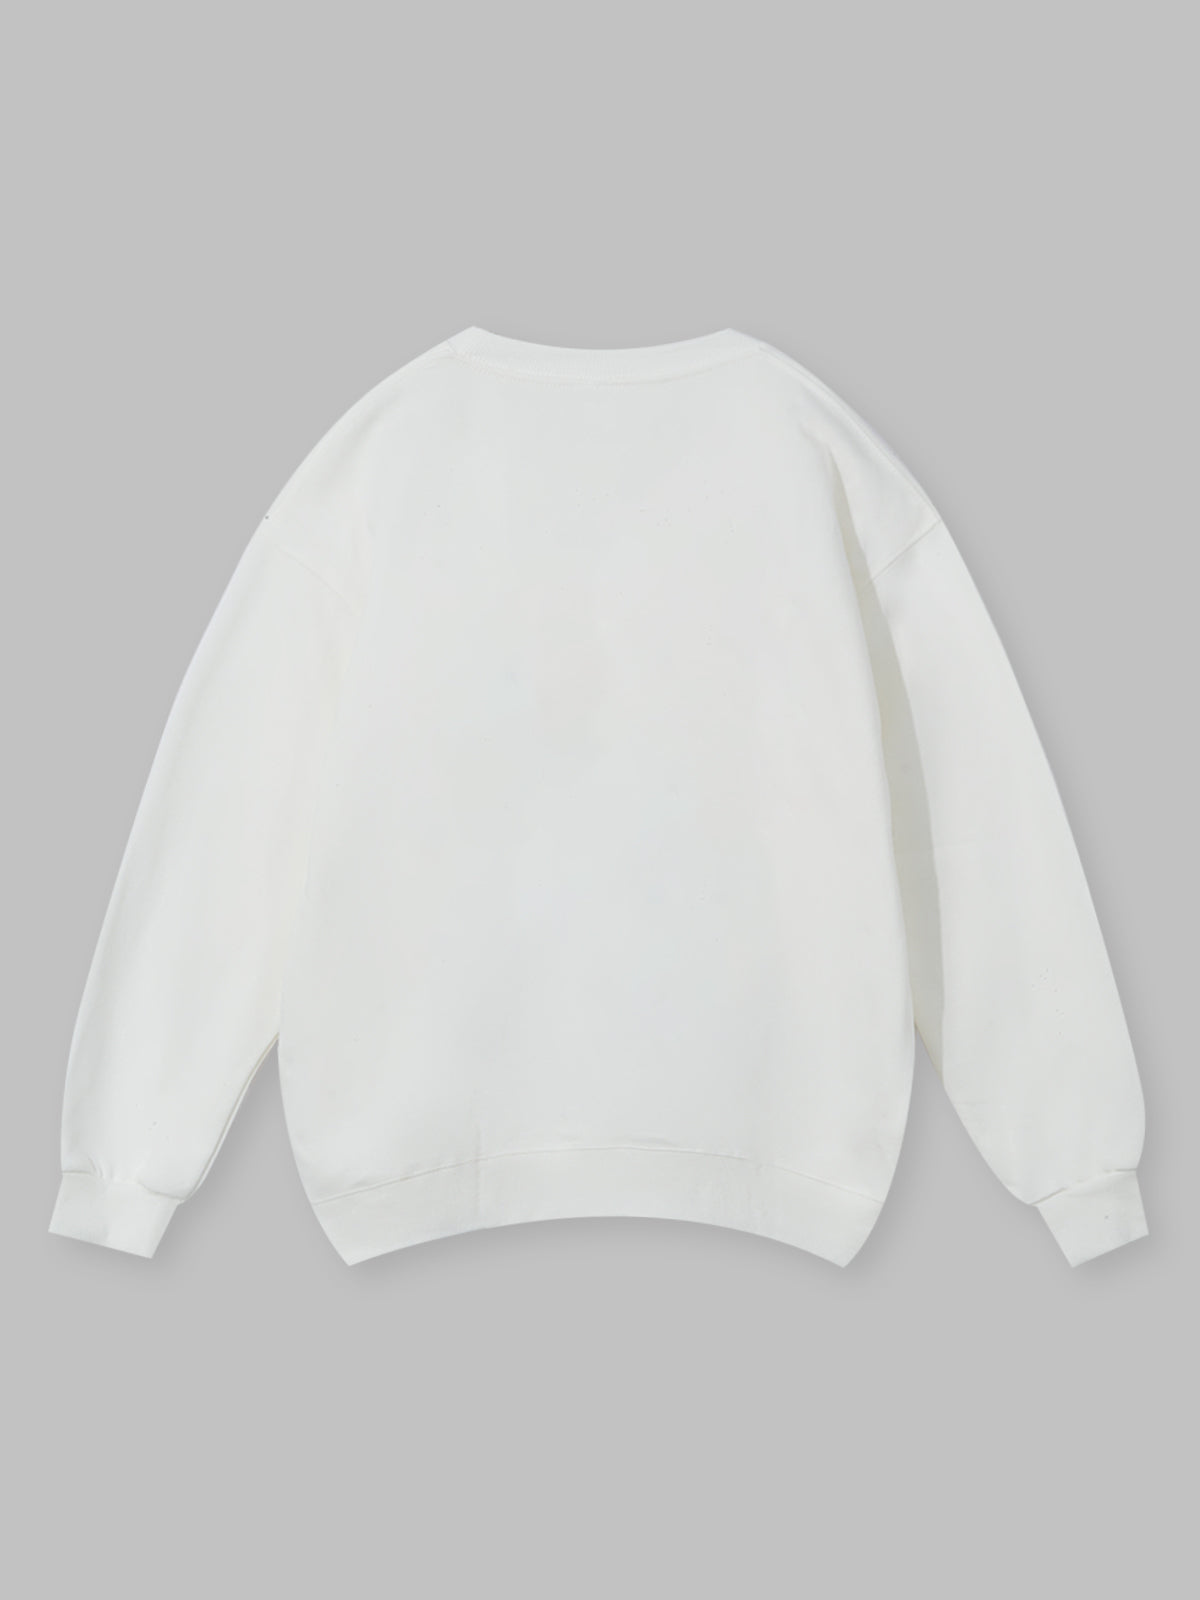 UNKNOWN ALLURE© Black Madonna 320Gg White Sweatshirt